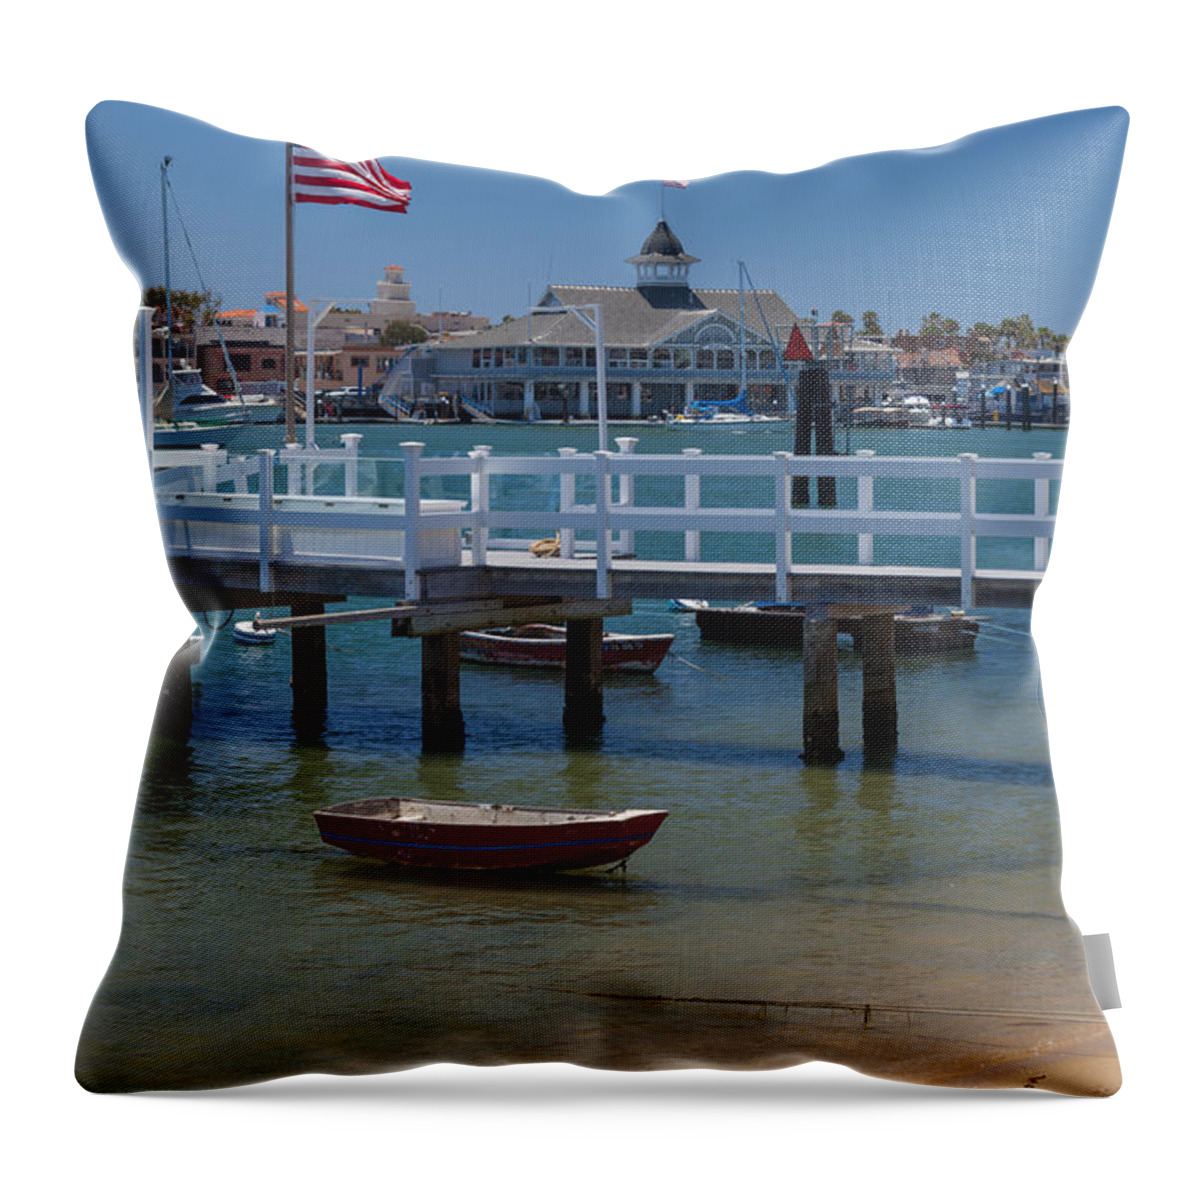 Newport Beach Throw Pillow featuring the photograph Summertime in Newport Beach Harbor by Cliff Wassmann